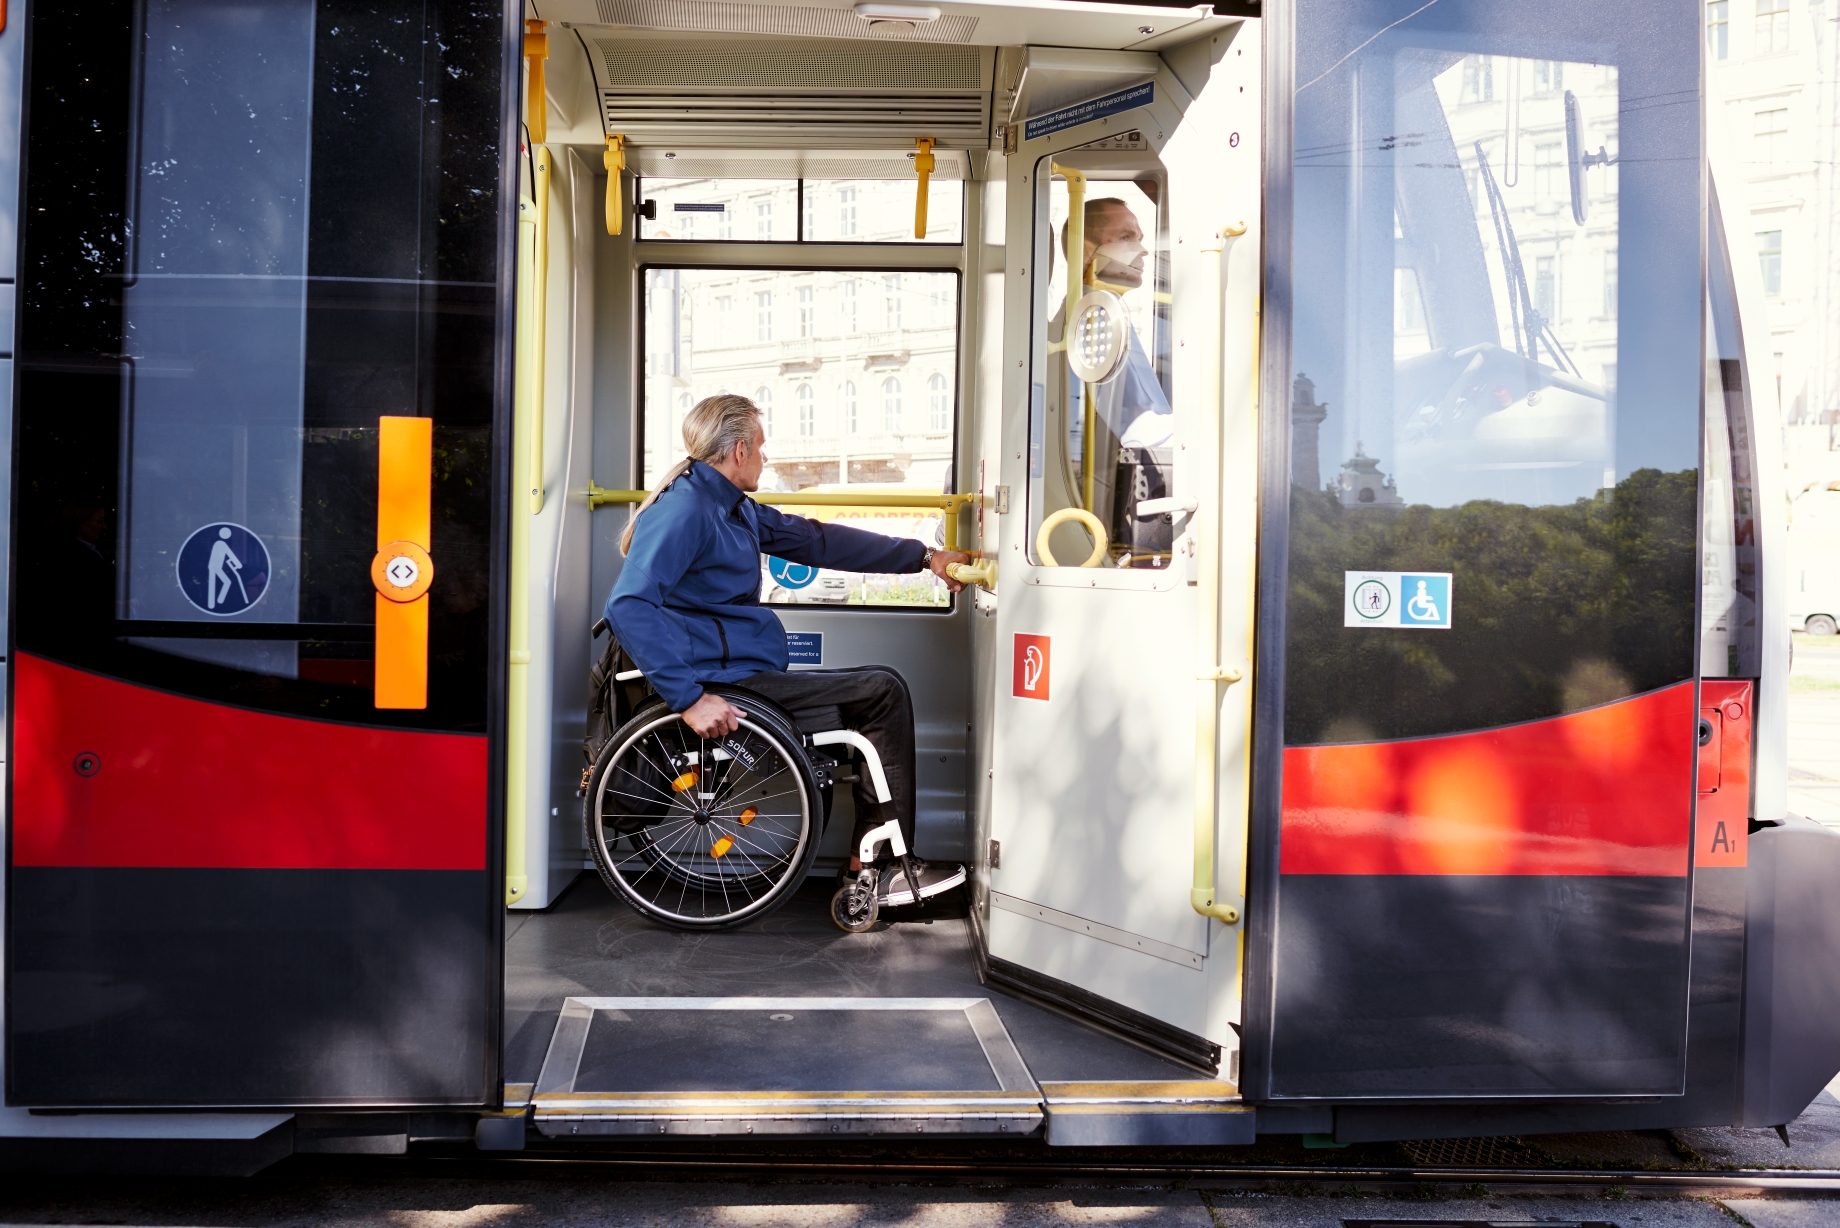 Moderne Straßenbahnen sind auch für Fahrgäste im Rollstuhl barrierefrei nutzbar. Hinter der Fahrerkabine gibt es einen Stellplatz für Rollstuhlfahrer.